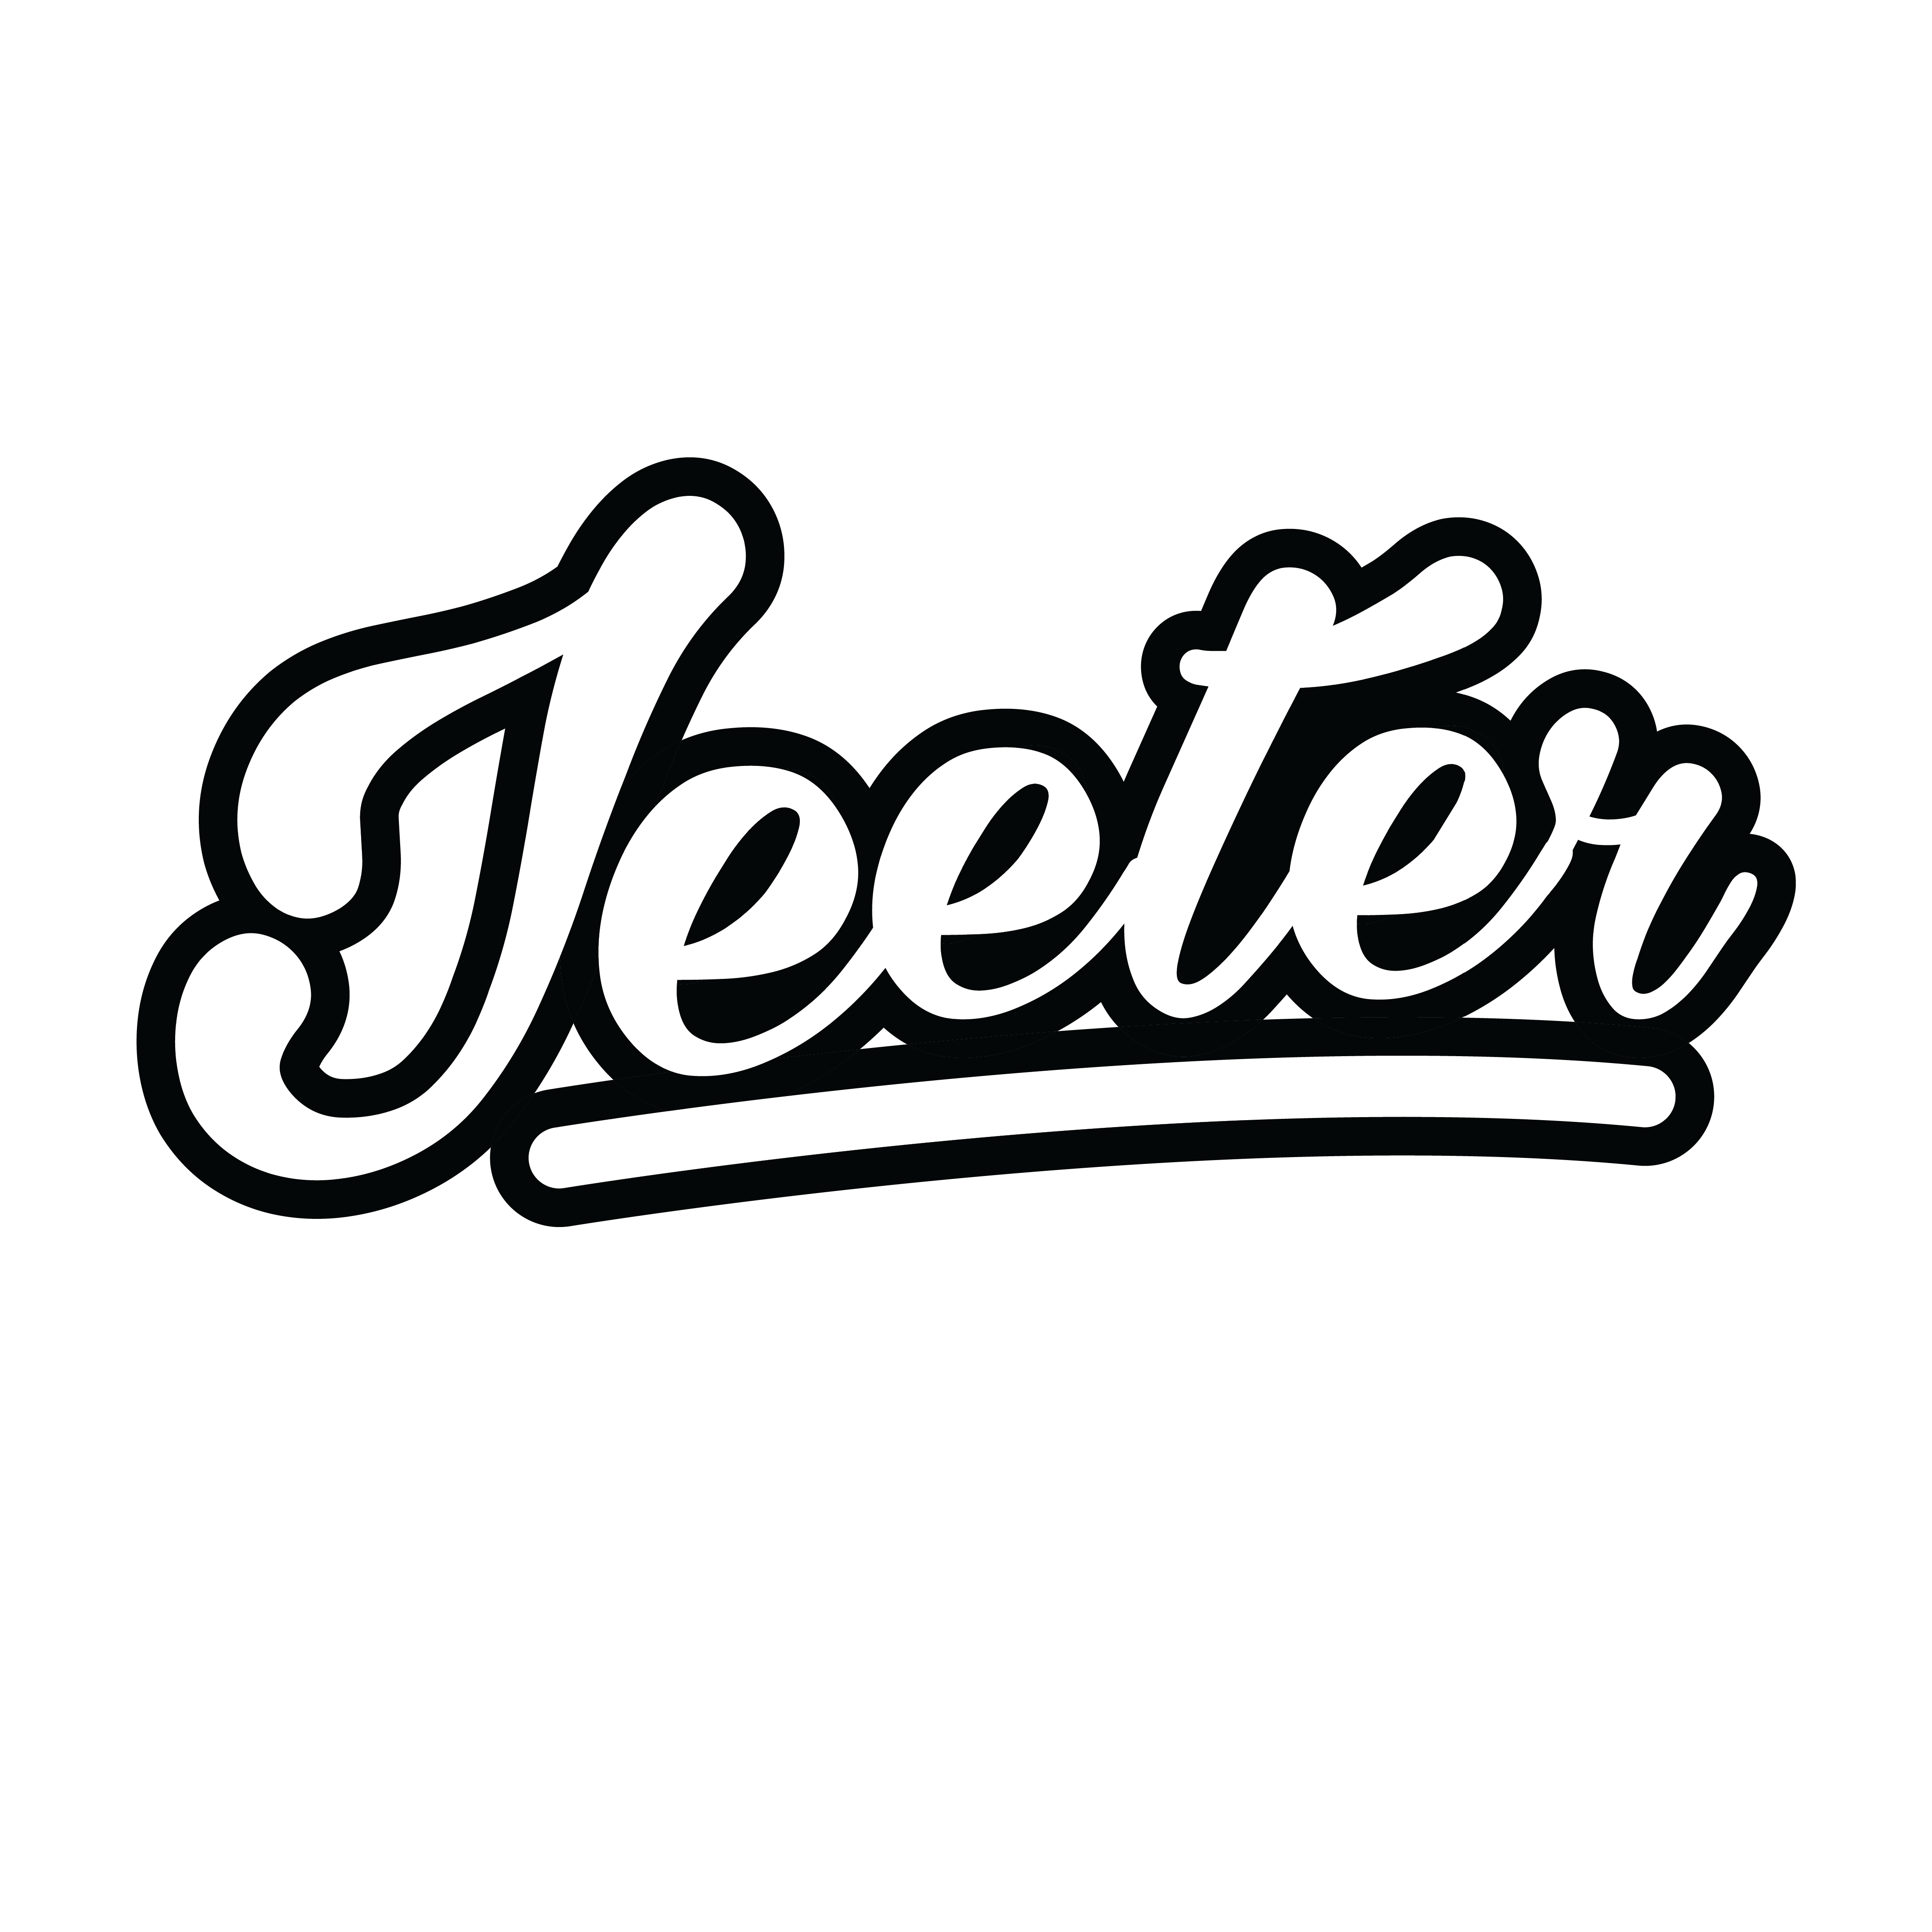 Jeeter.png__PID:a2d8927d-d4cd-44b0-bed9-67d1e7b23d36